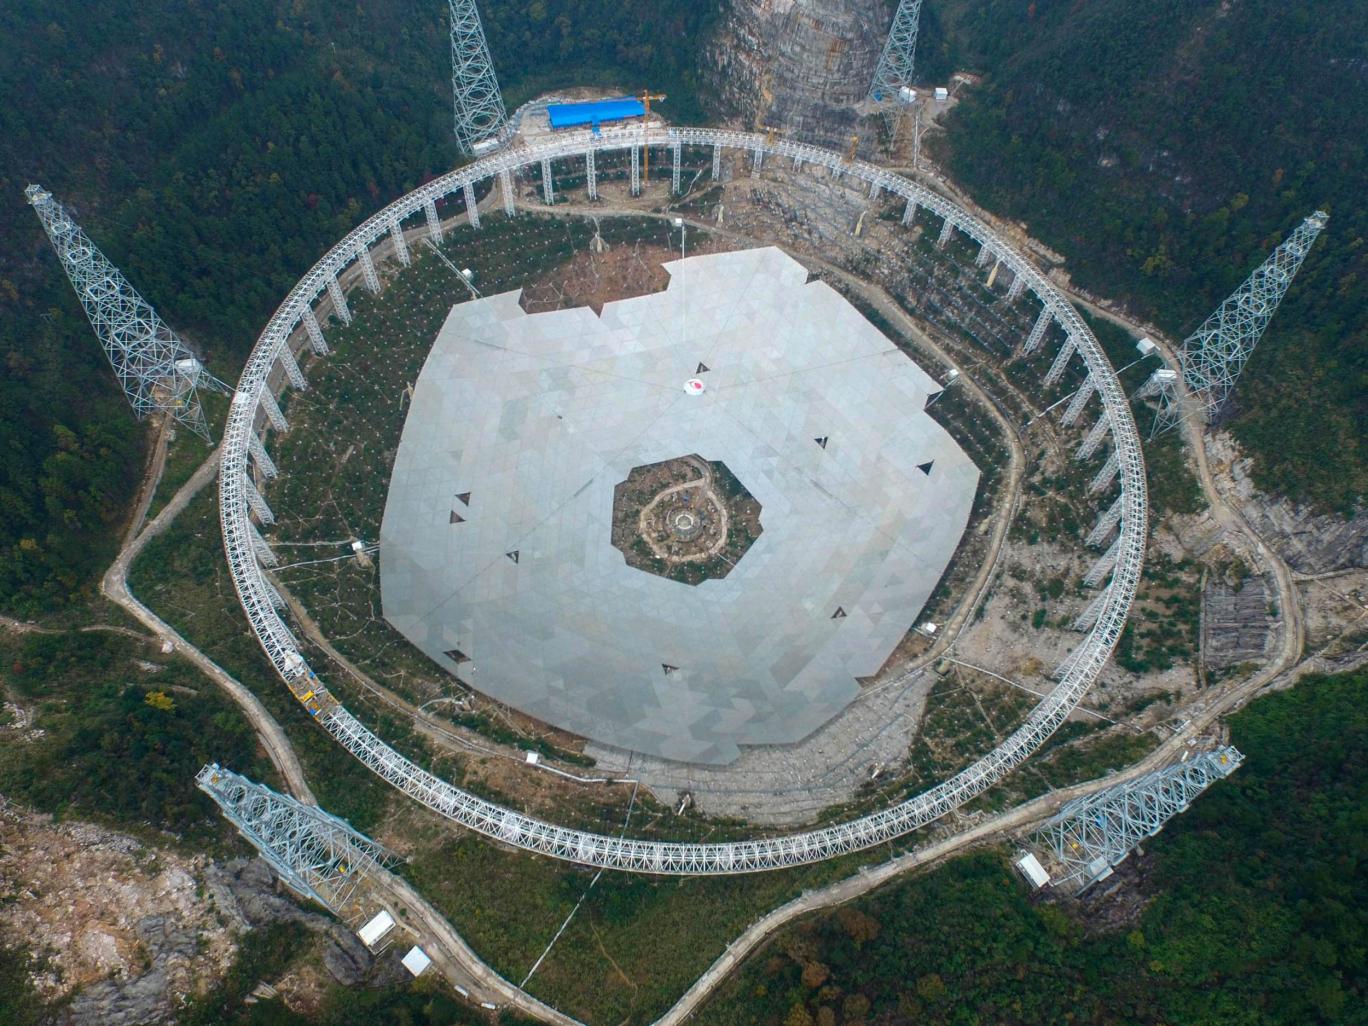 Kính thiên văn lớn nhất thế giới được xây dựng tại tỉnh Quý Châu, Trung Quốc 